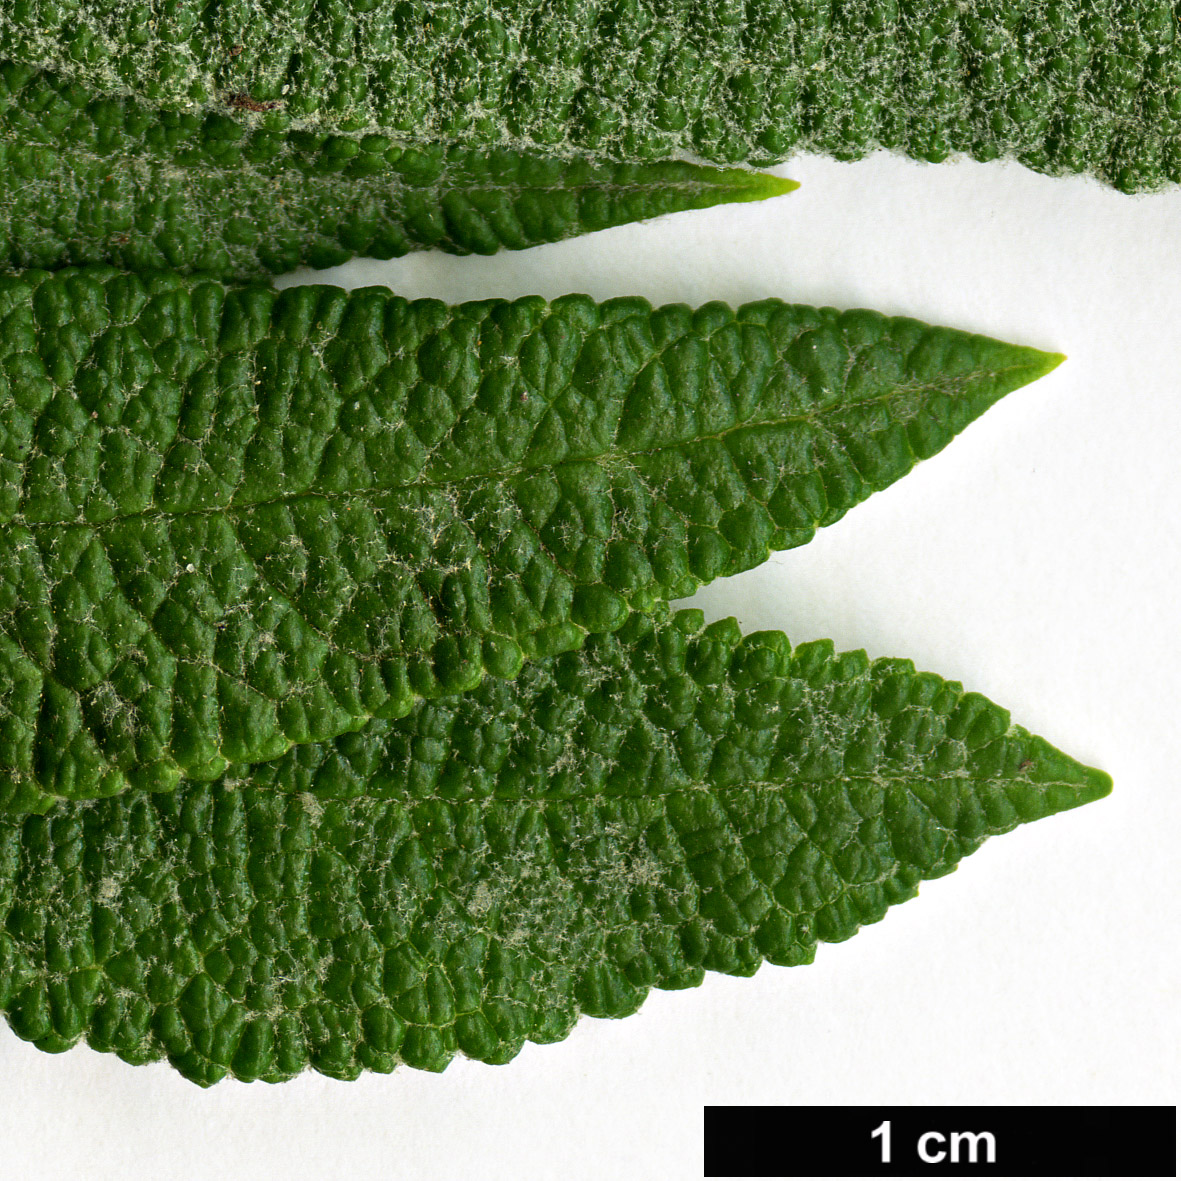 High resolution image: Family: Scrophulariaceae - Genus: Buddleja - Taxon: loricata